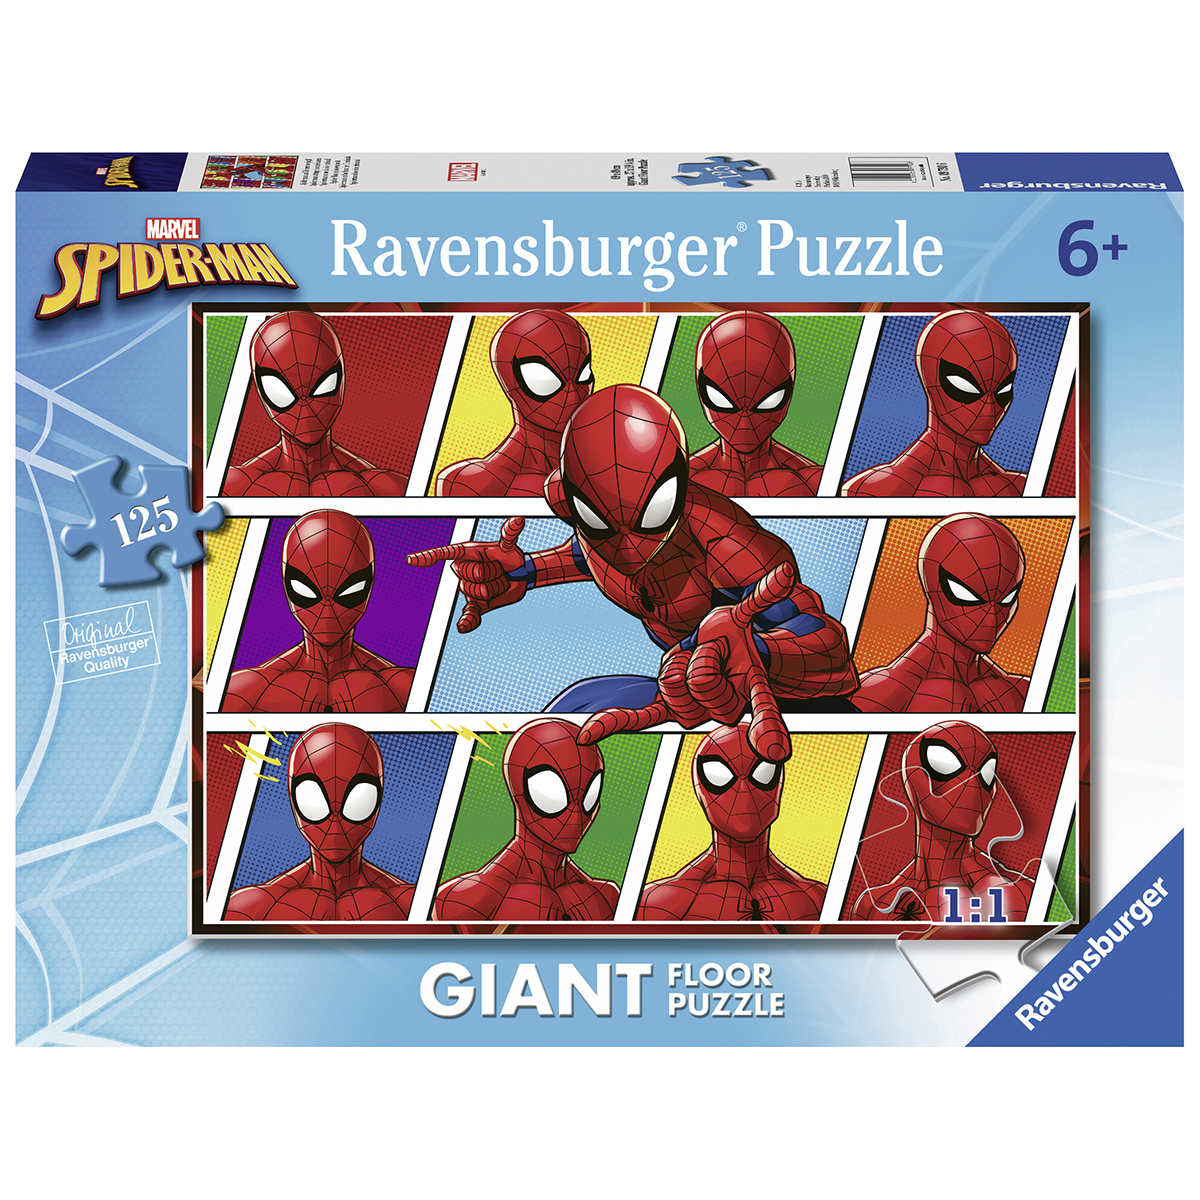 Ravensburger - puzzle 125 pezzi formato giant - per bambini a partire dai 6 anni - spiderman - RAVENSBURGER, Spiderman